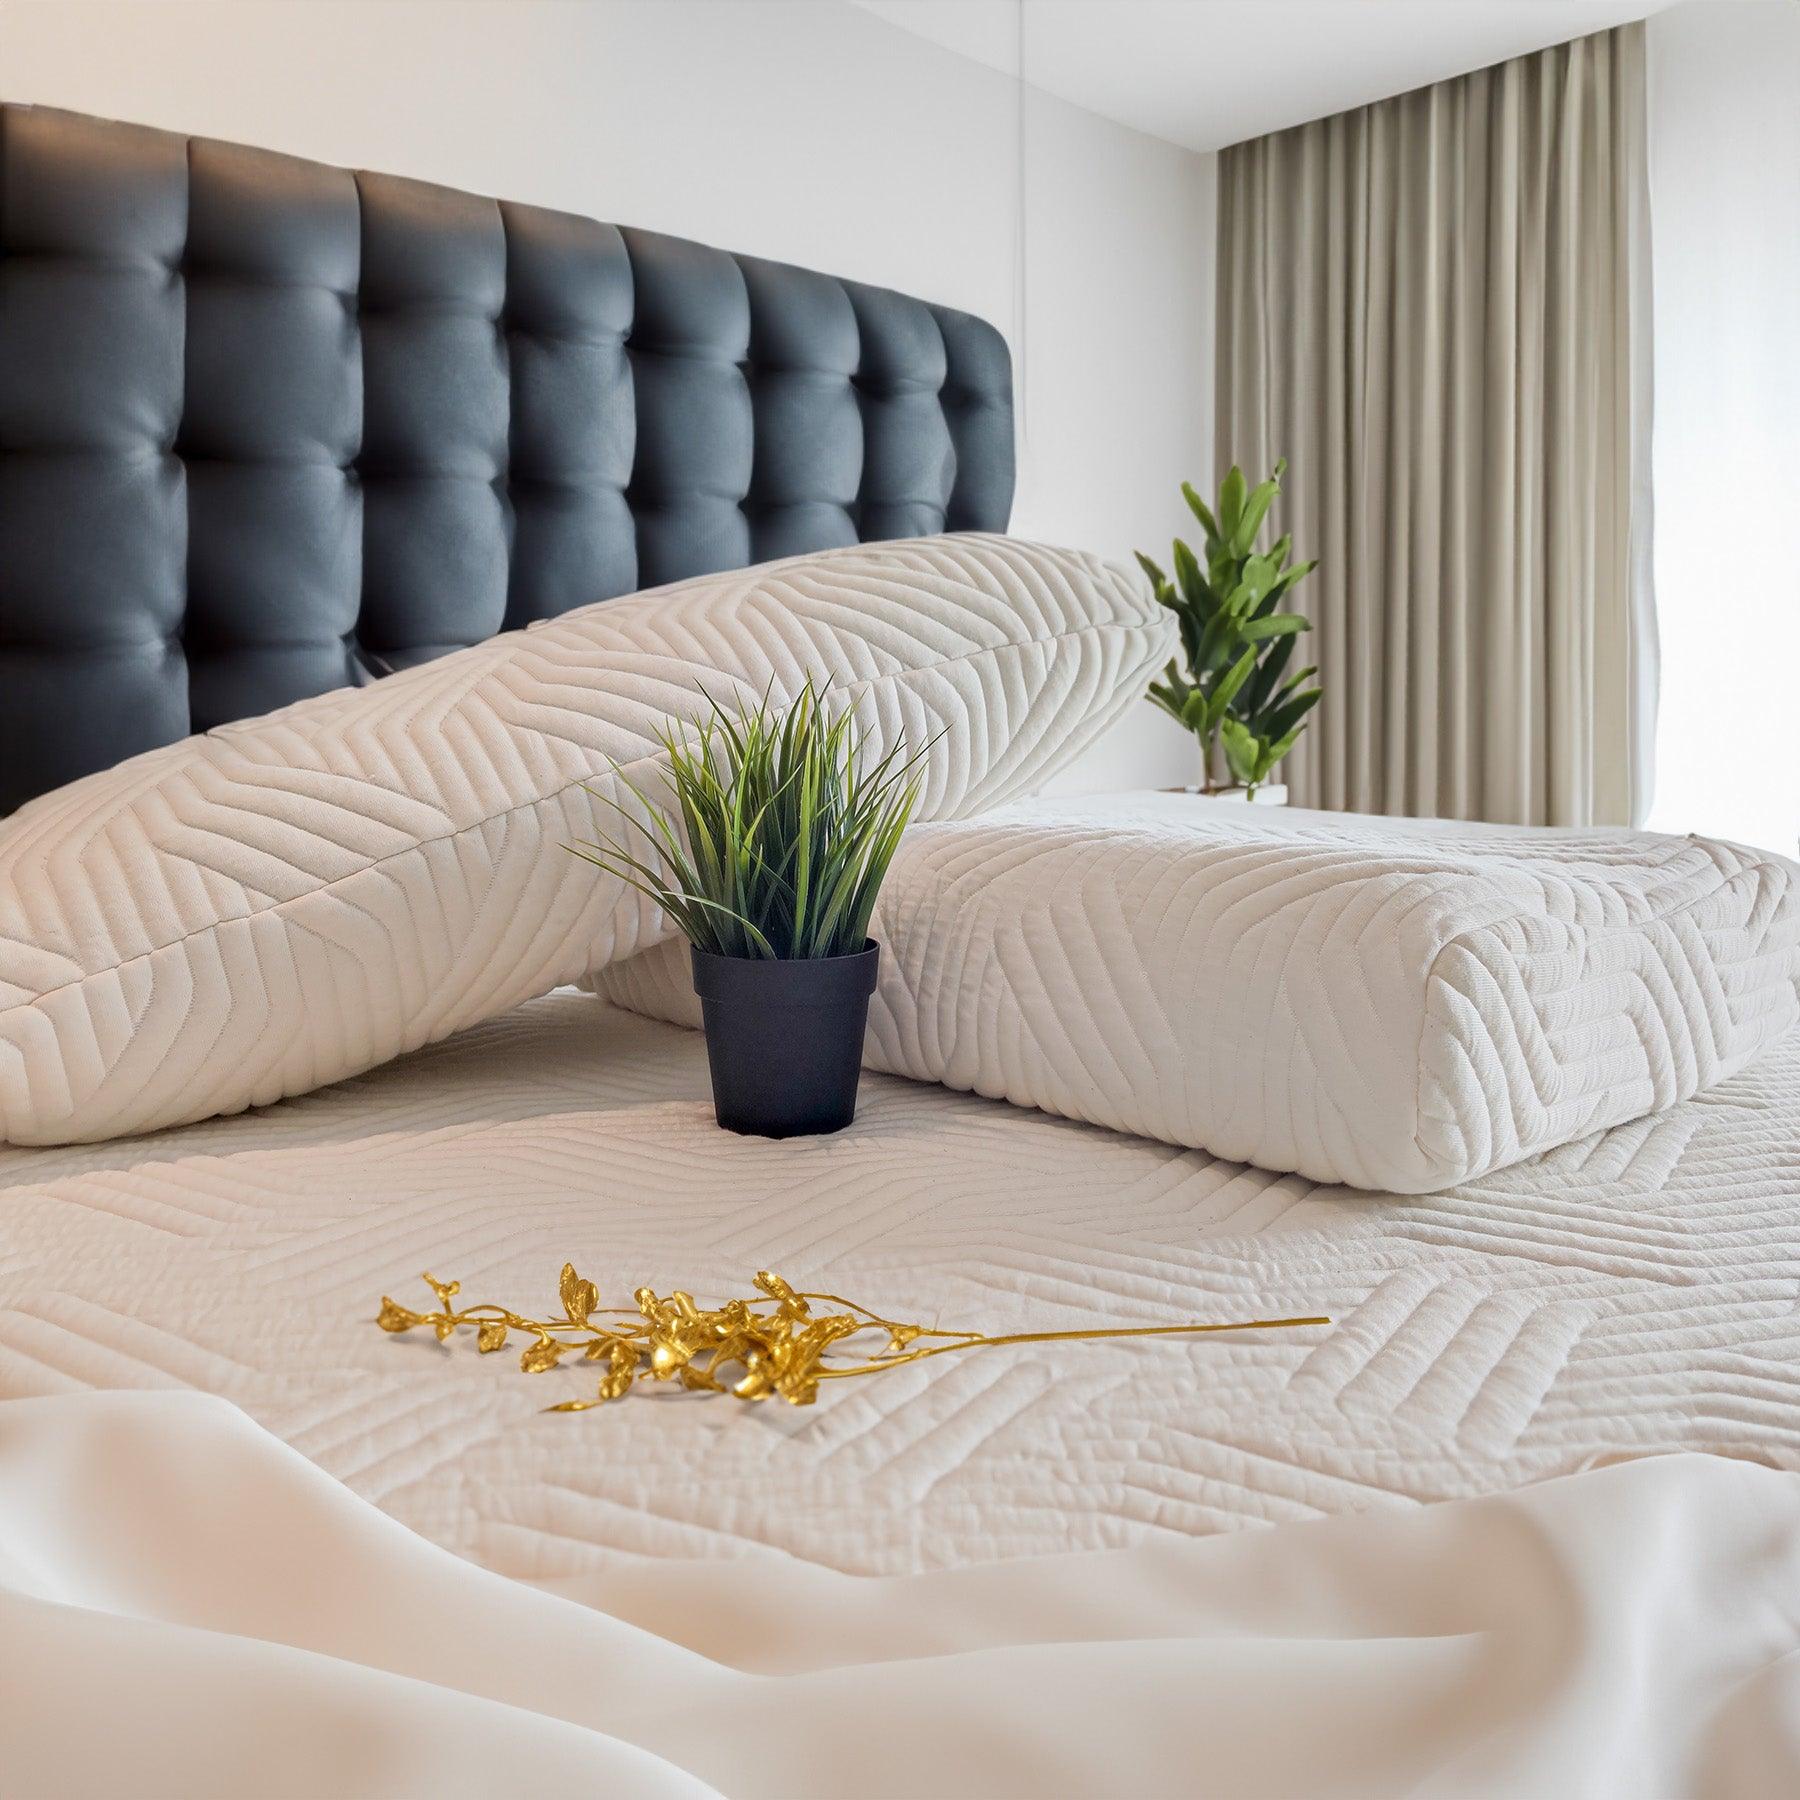 Dettaglio del cuscino 100% Watergel Donizetti di Beliamo, ideale per offrire freschezza e supporto durante il sonno